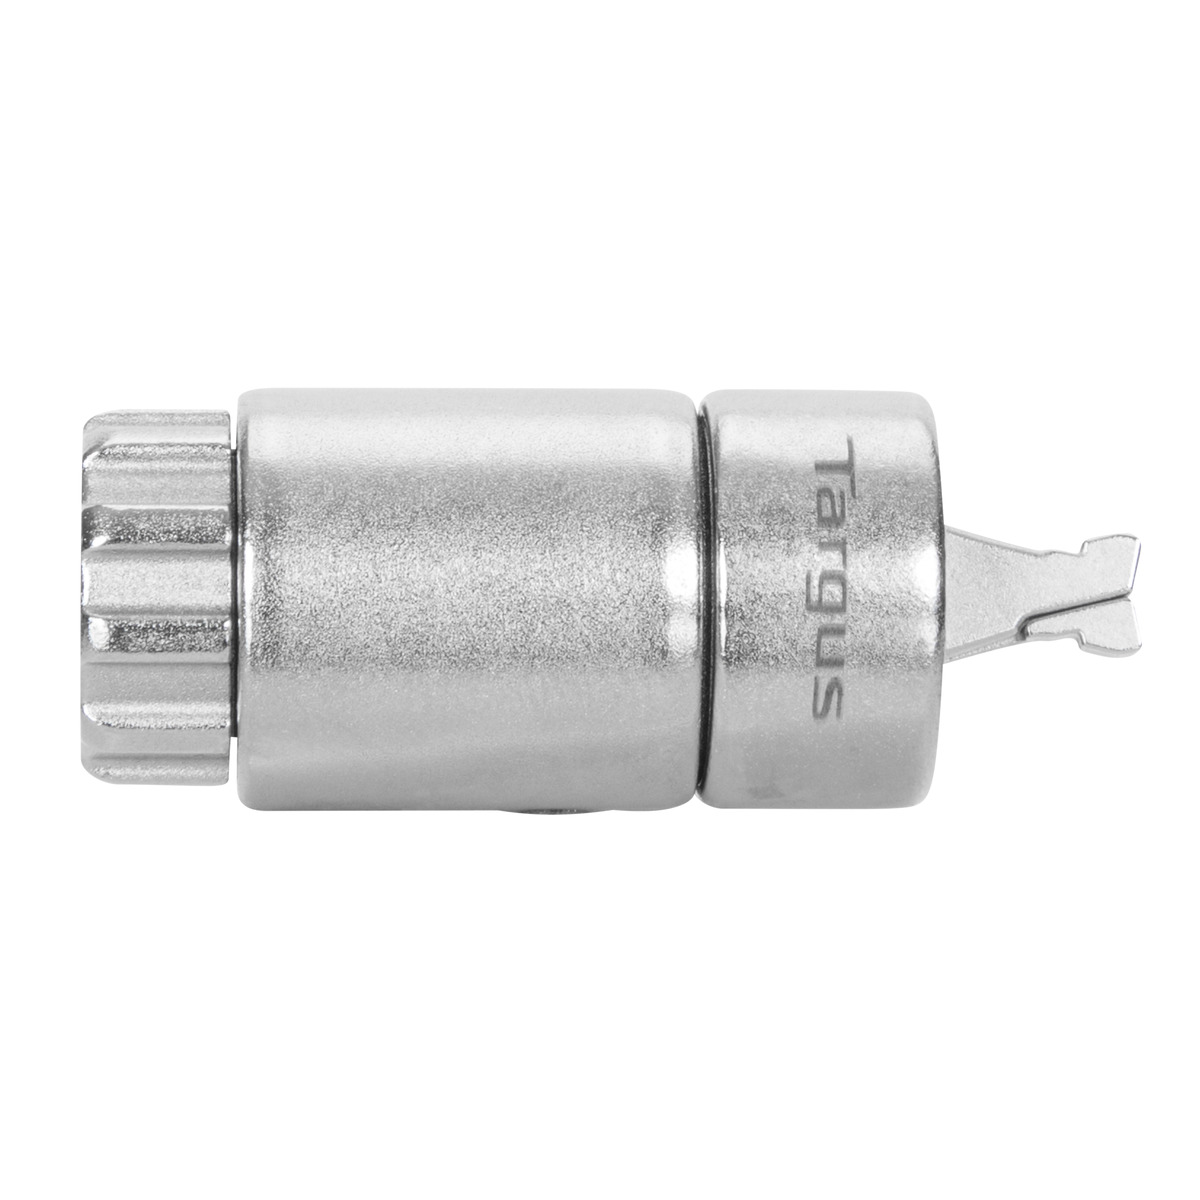  - DEFCON™ Ultimate Universal Keyed Cable Candado con cabezal adaptable Candado 3